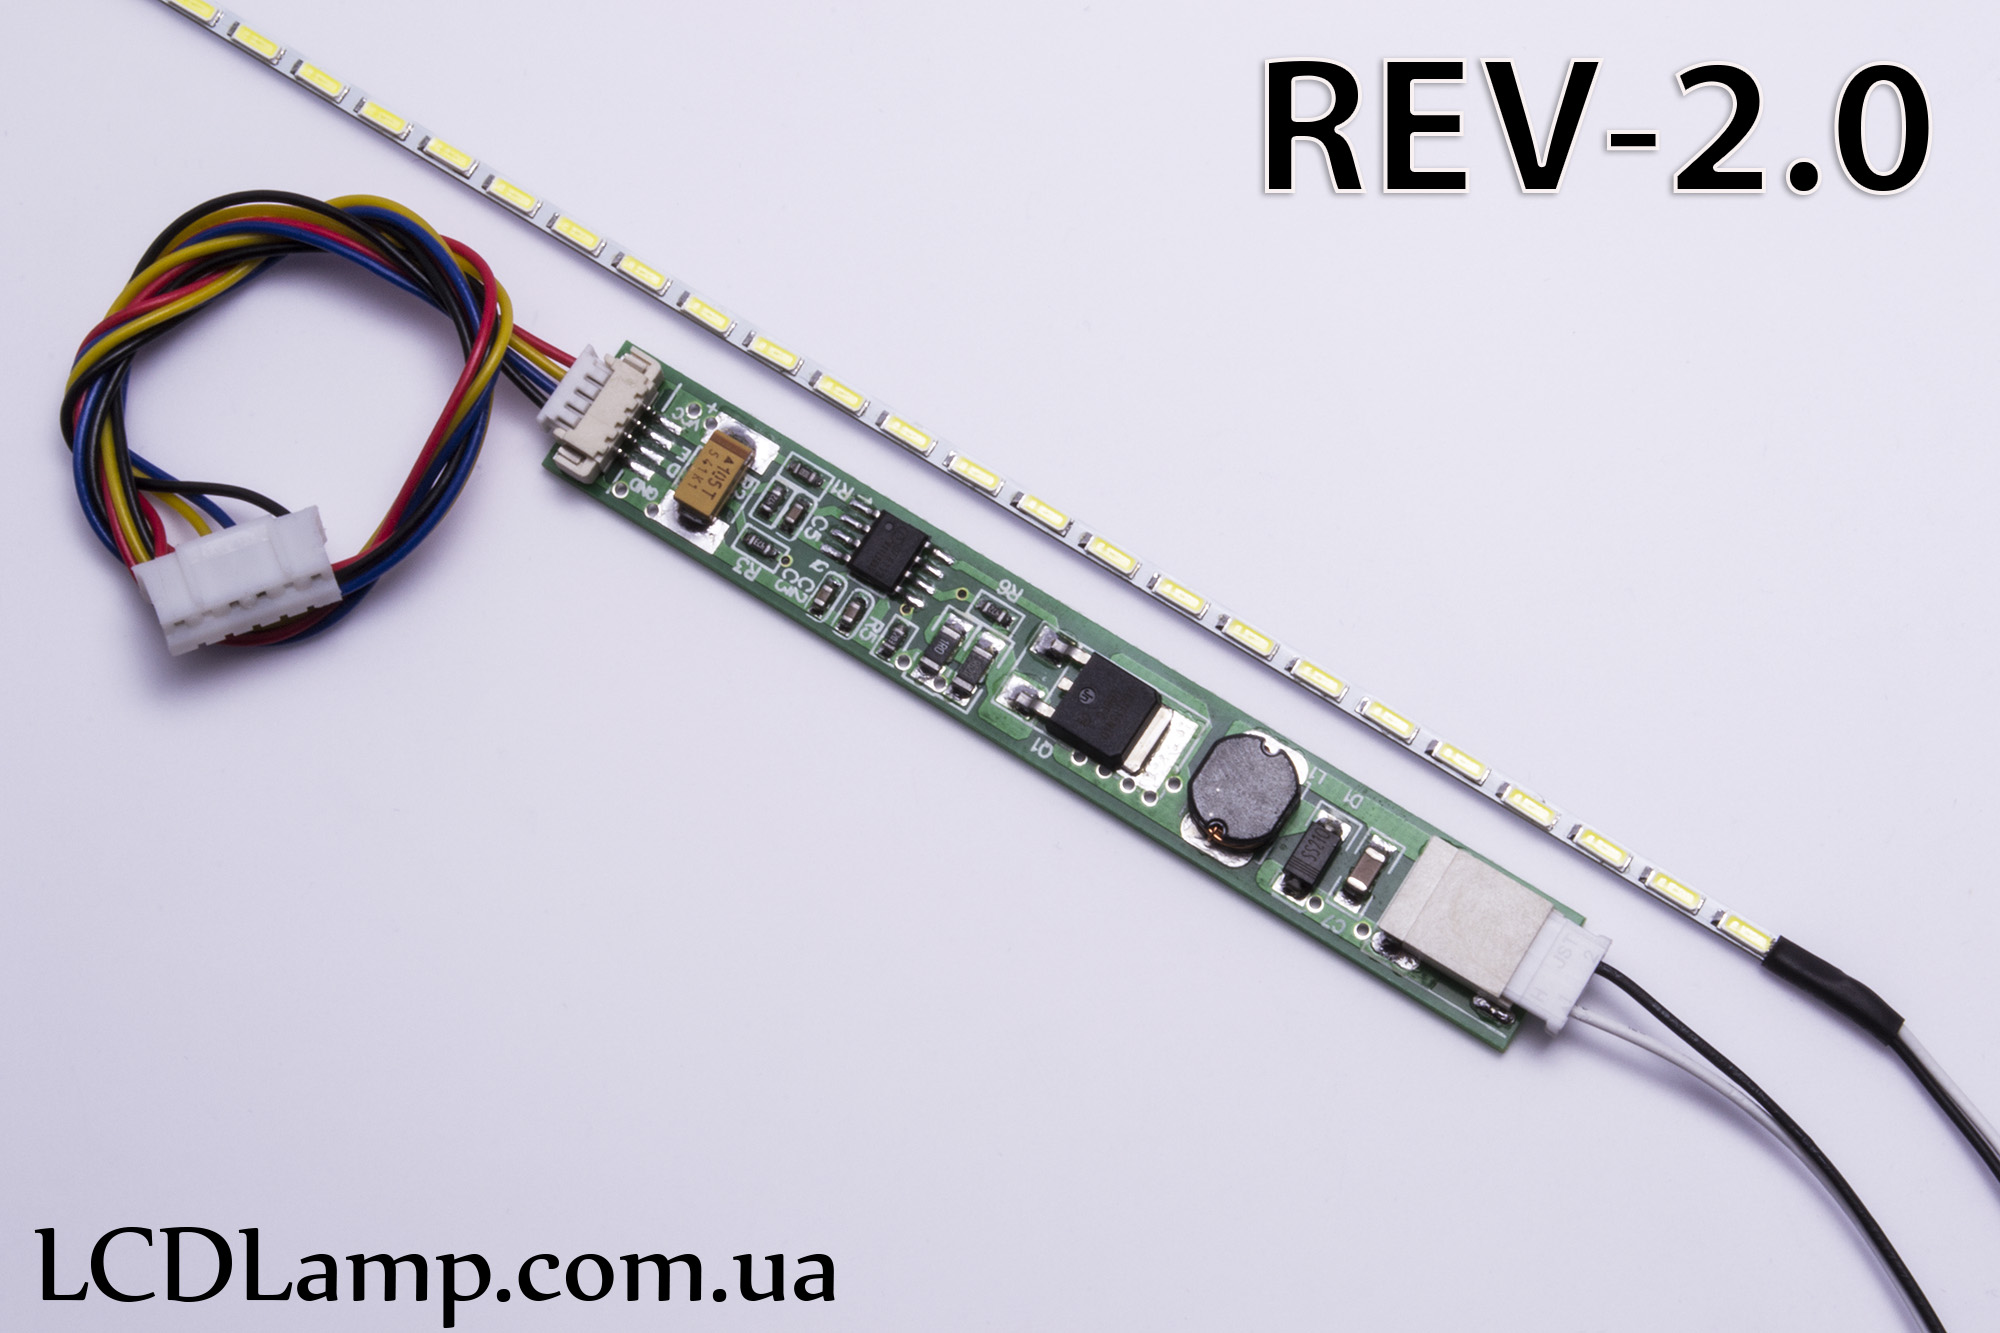 LED набор для ноутбука Rev-2.0 (285мм.)